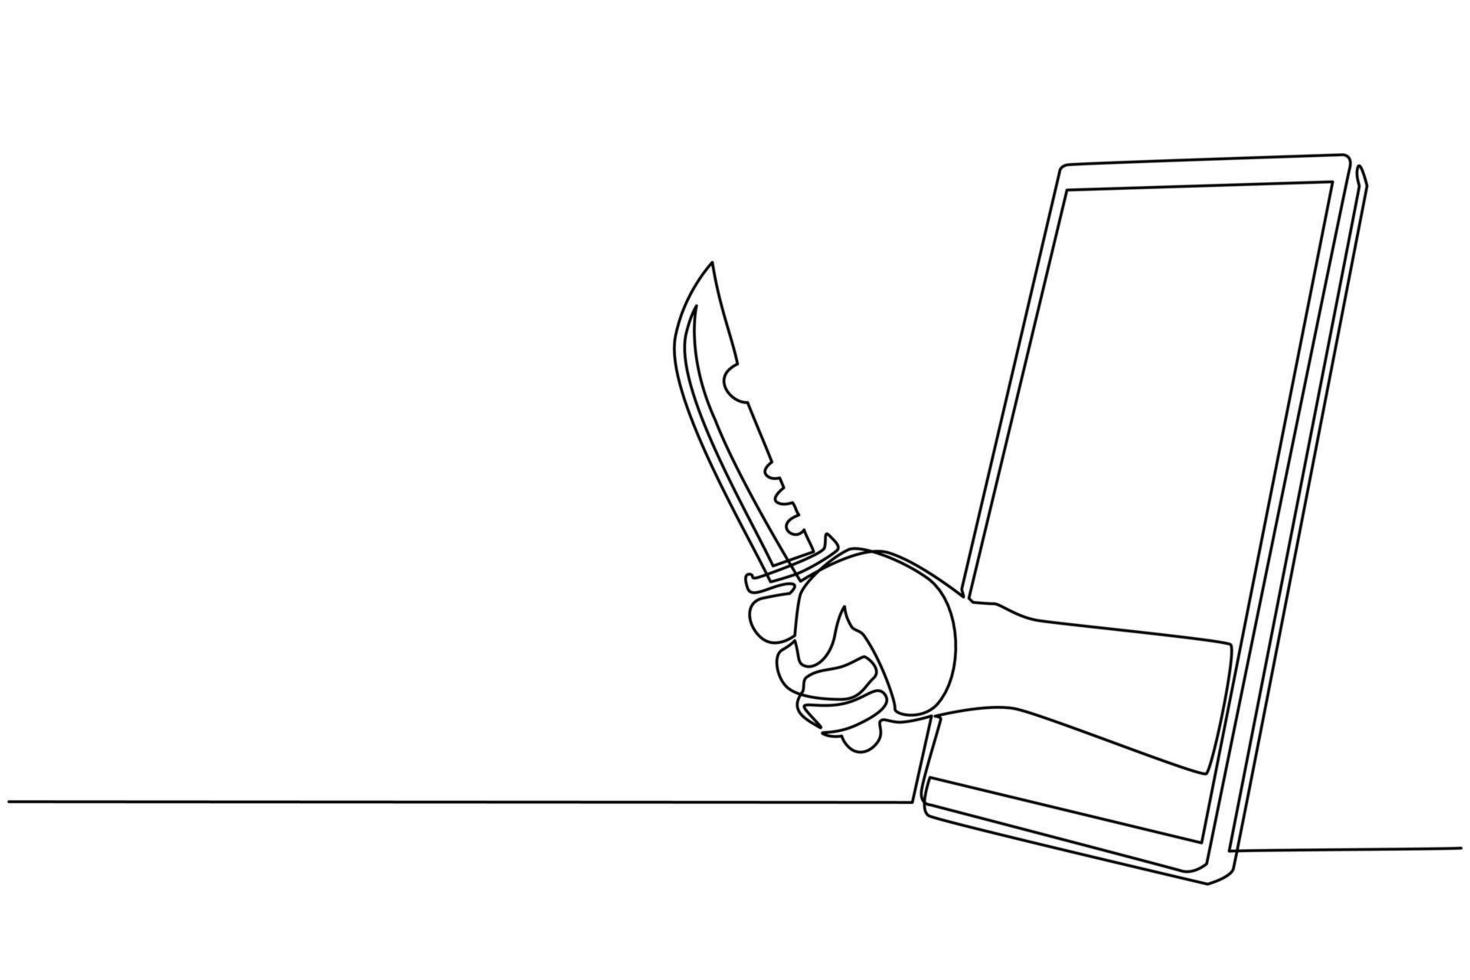 kontinuierliche einzeilige zeichnung hand halten militärisches kampfmesser über handy. konzept von handyspielen, e-sport, unterhaltungsanwendung für smartphones. einzeiliges zeichnen design vektorgrafik vektor